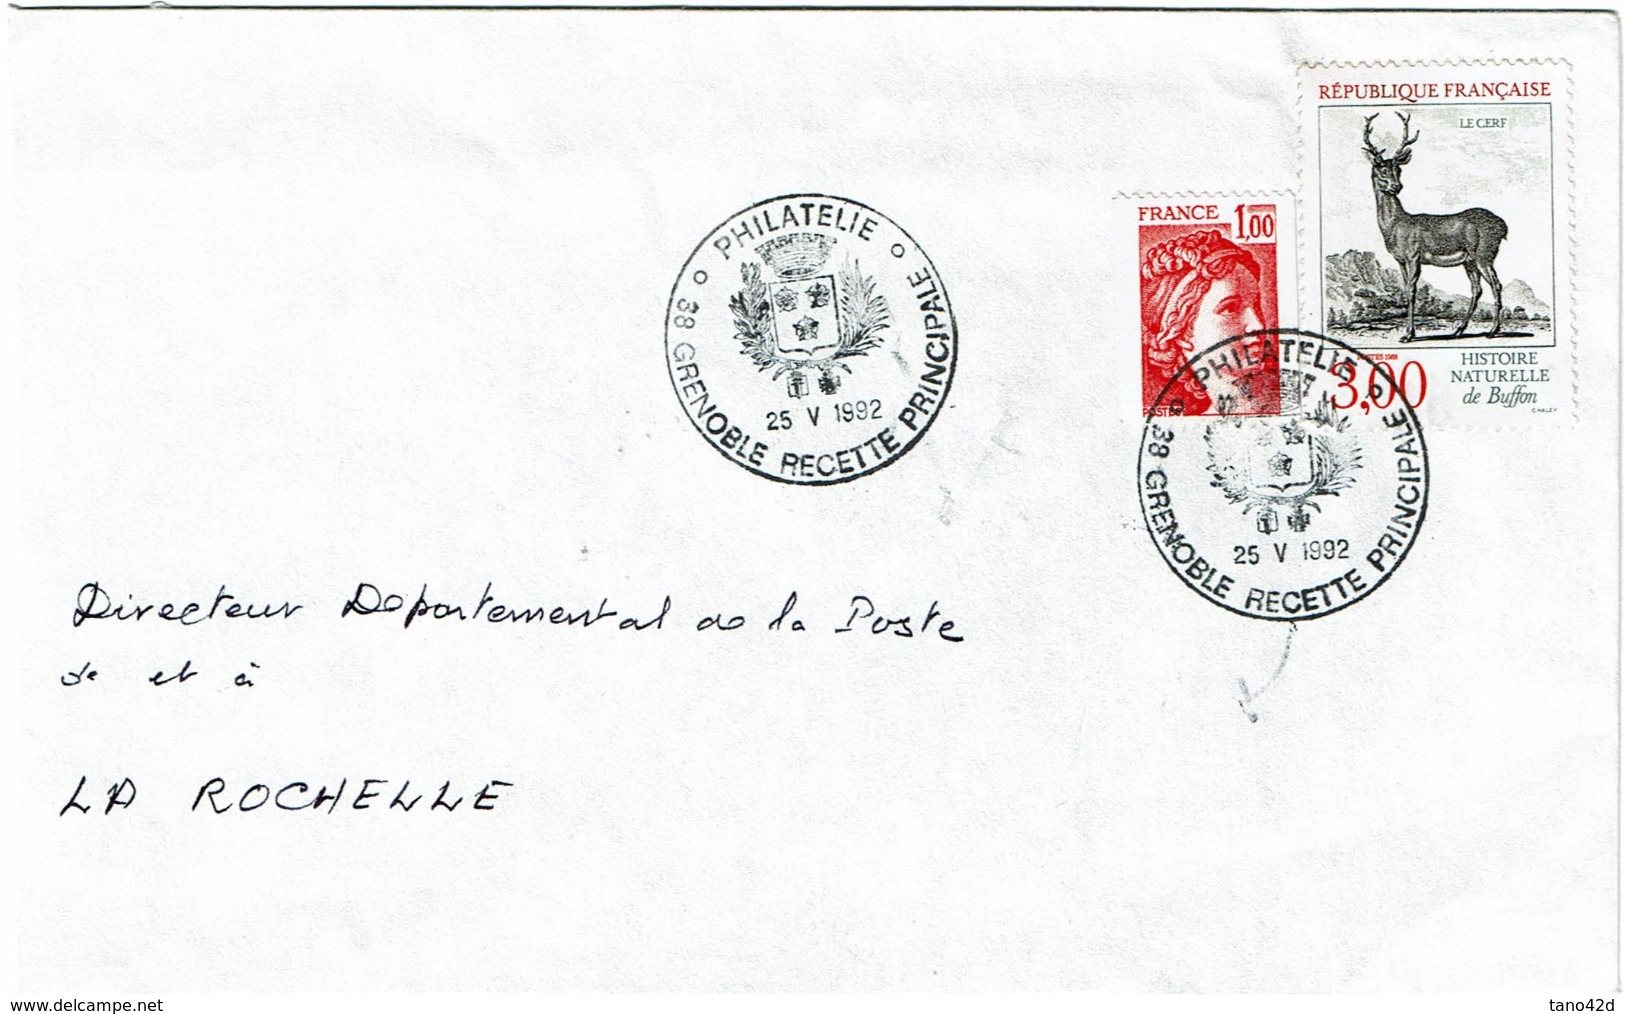 LCTN58/2 - OBL. PHIL. GRENOBLE 25/5/1992 - Briefmarkenausstellungen